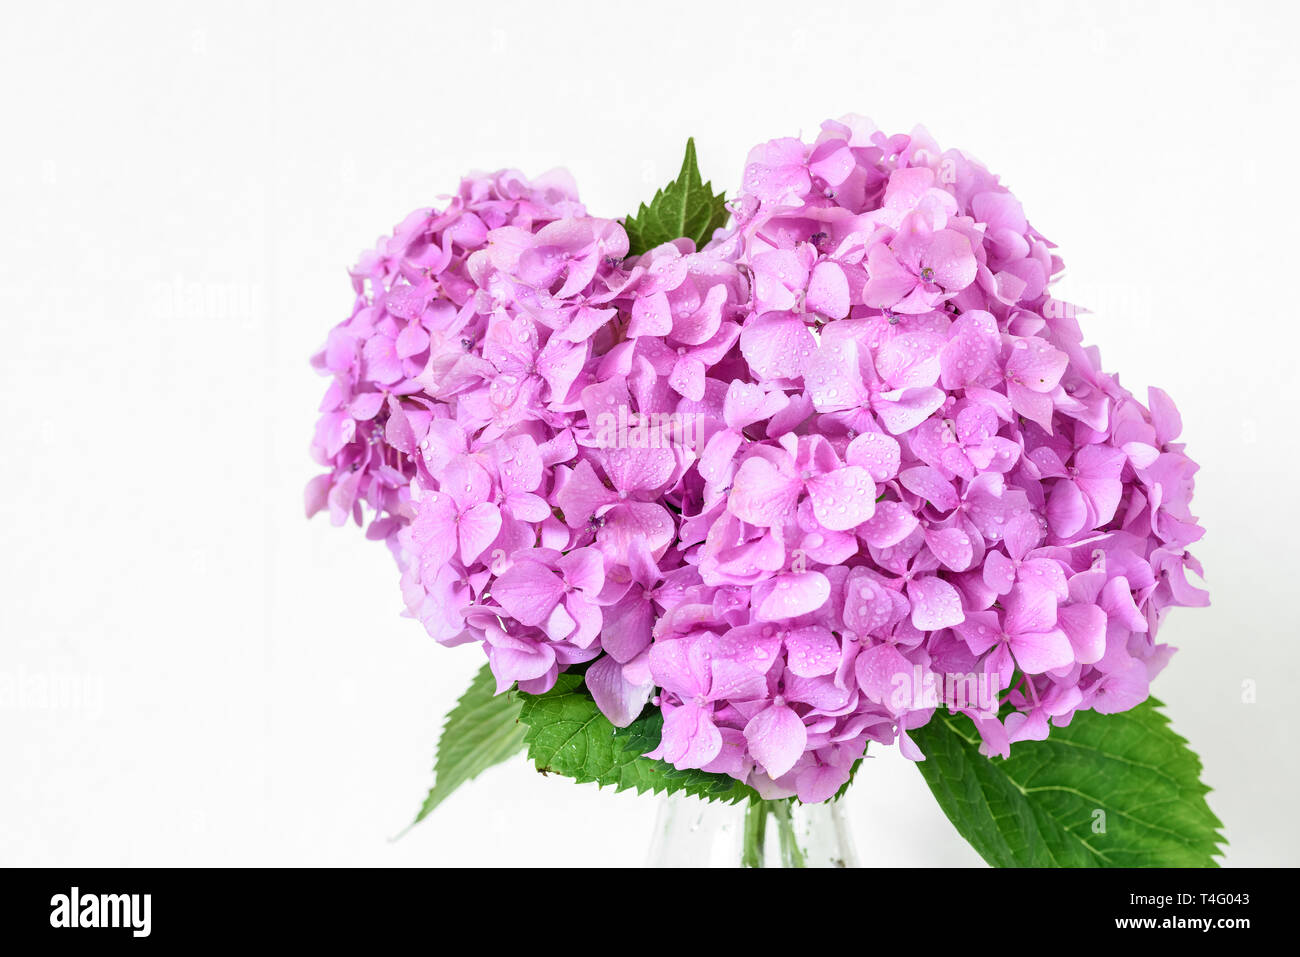 Schönen Blumenstrauß rosa Hortensie Blumen mit Wassertropfen. Frühling Urlaub oder Hochzeit Hintergrund. Grußkarte. Nach oben Schließen Stockfoto